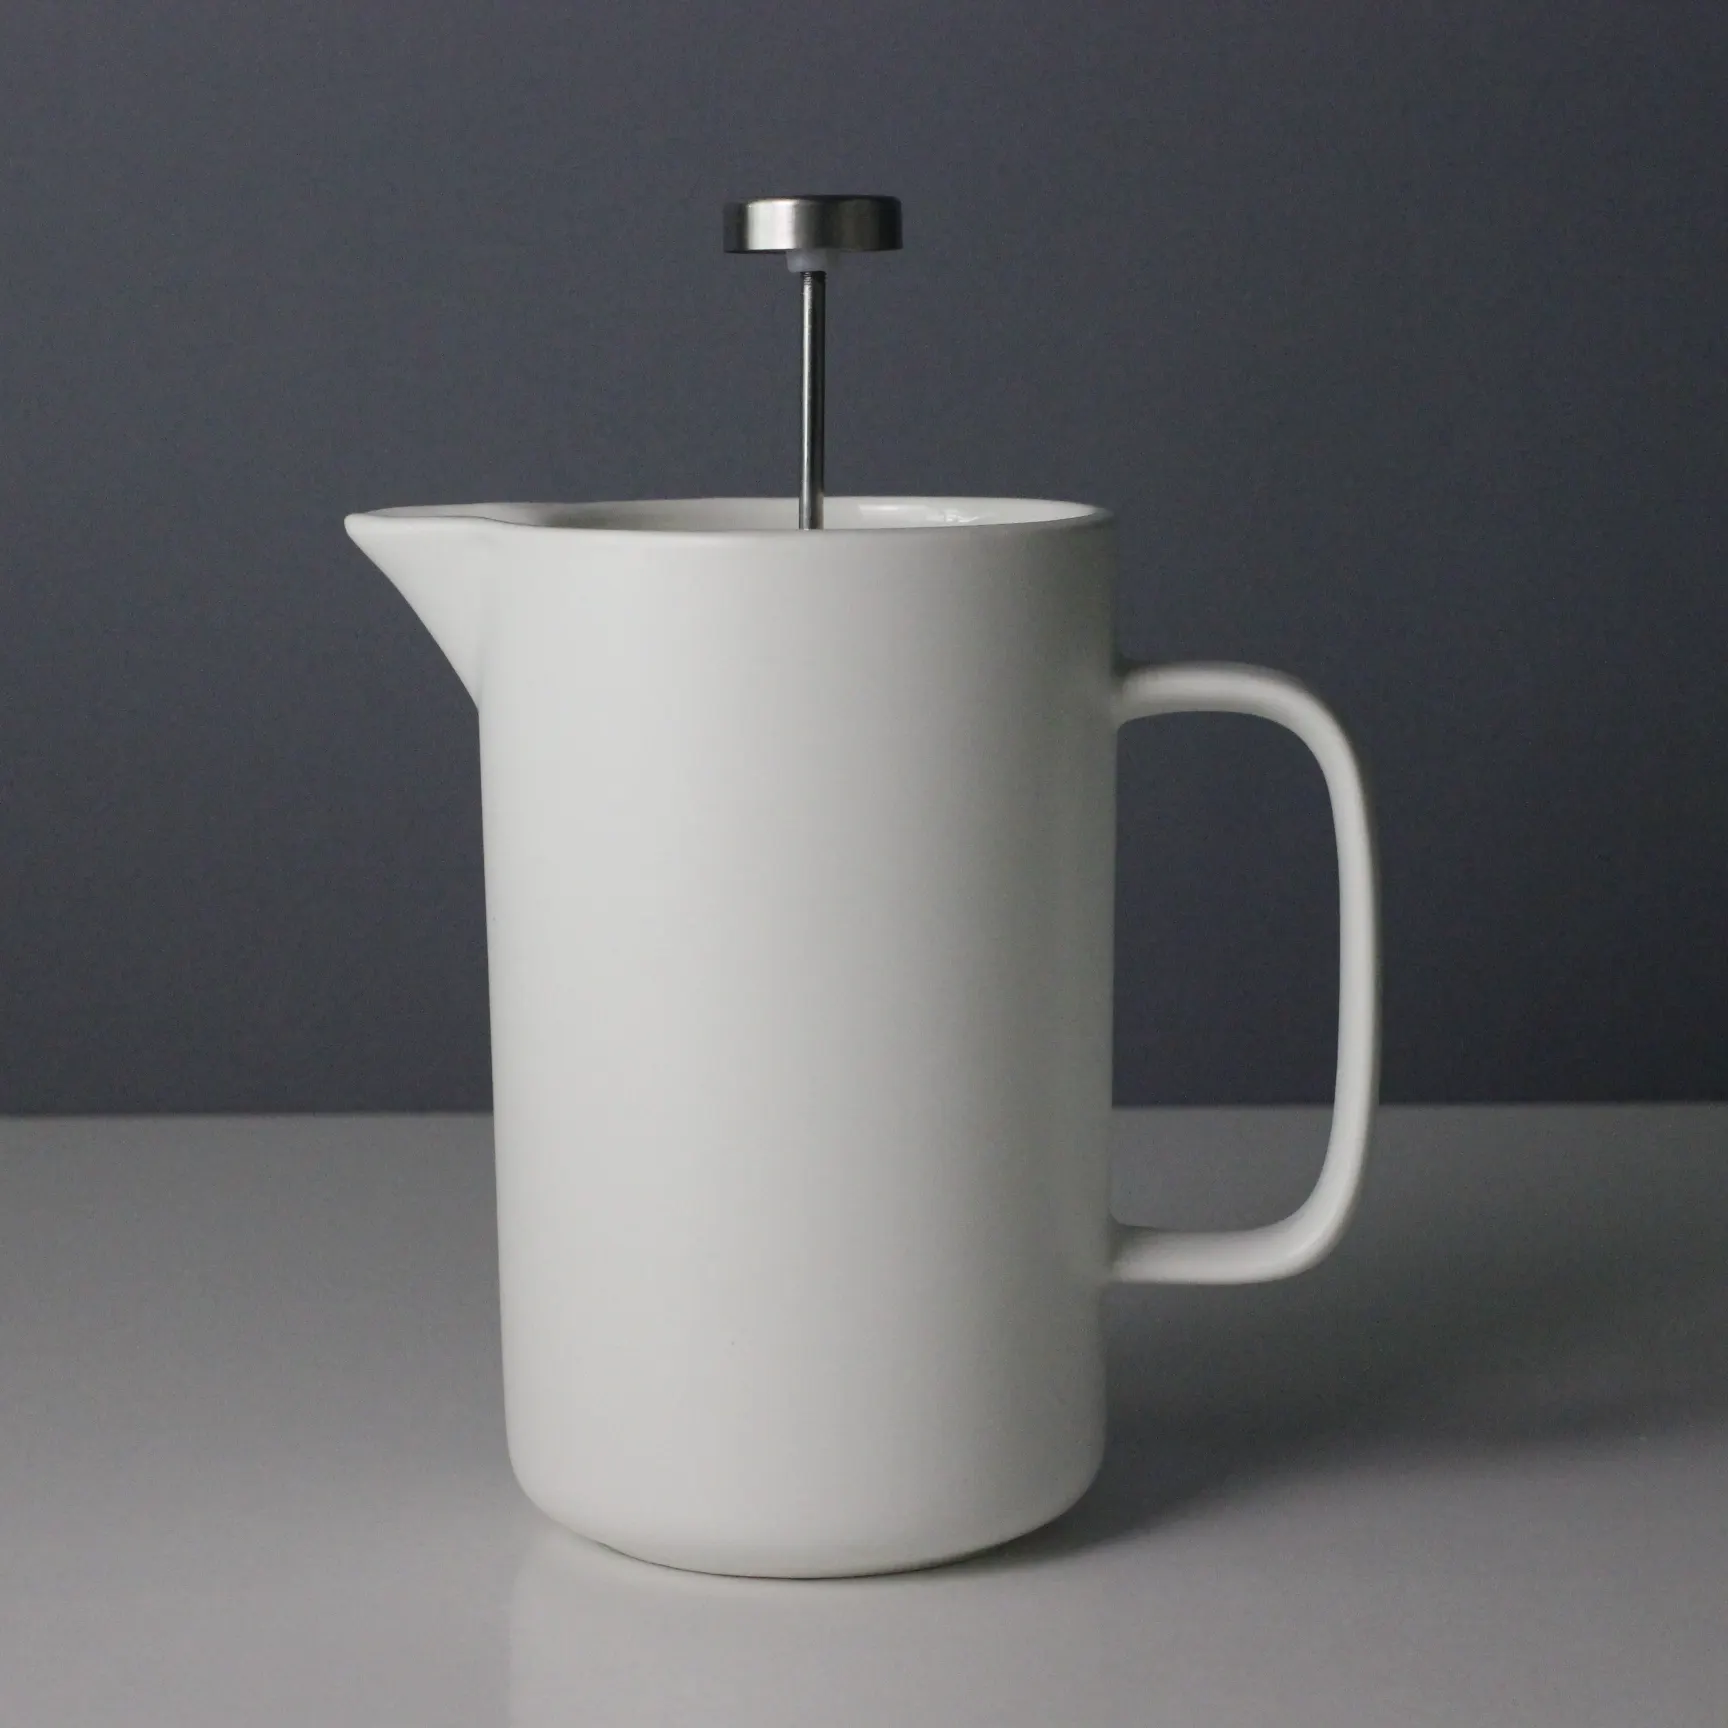 Colore personalizzato della macchina per tè e caffè in ceramica francese con doppio filtro in acciaio inossidabile per stoviglie